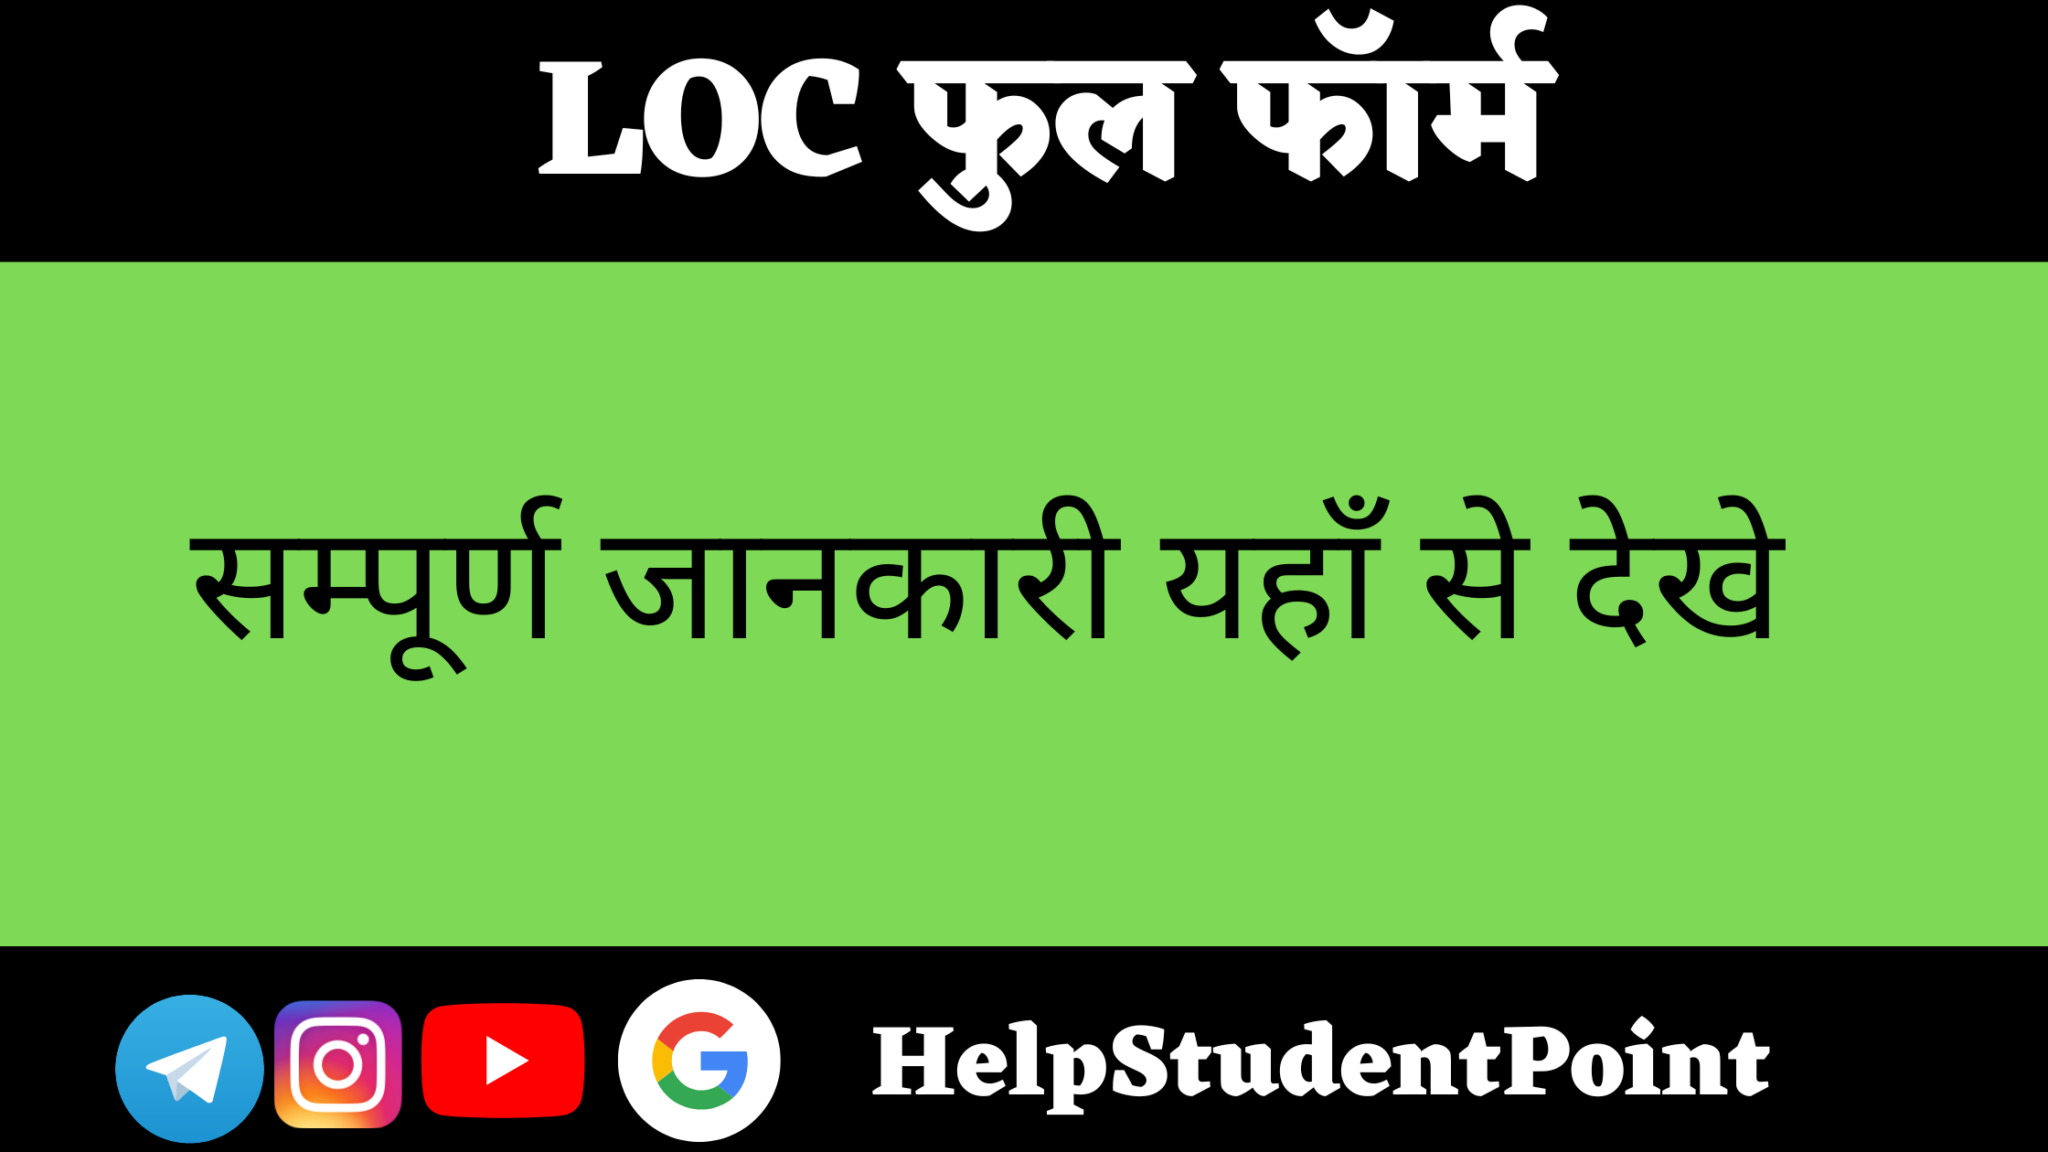 ocd-full-form-in-hindi-helpstudentpoint